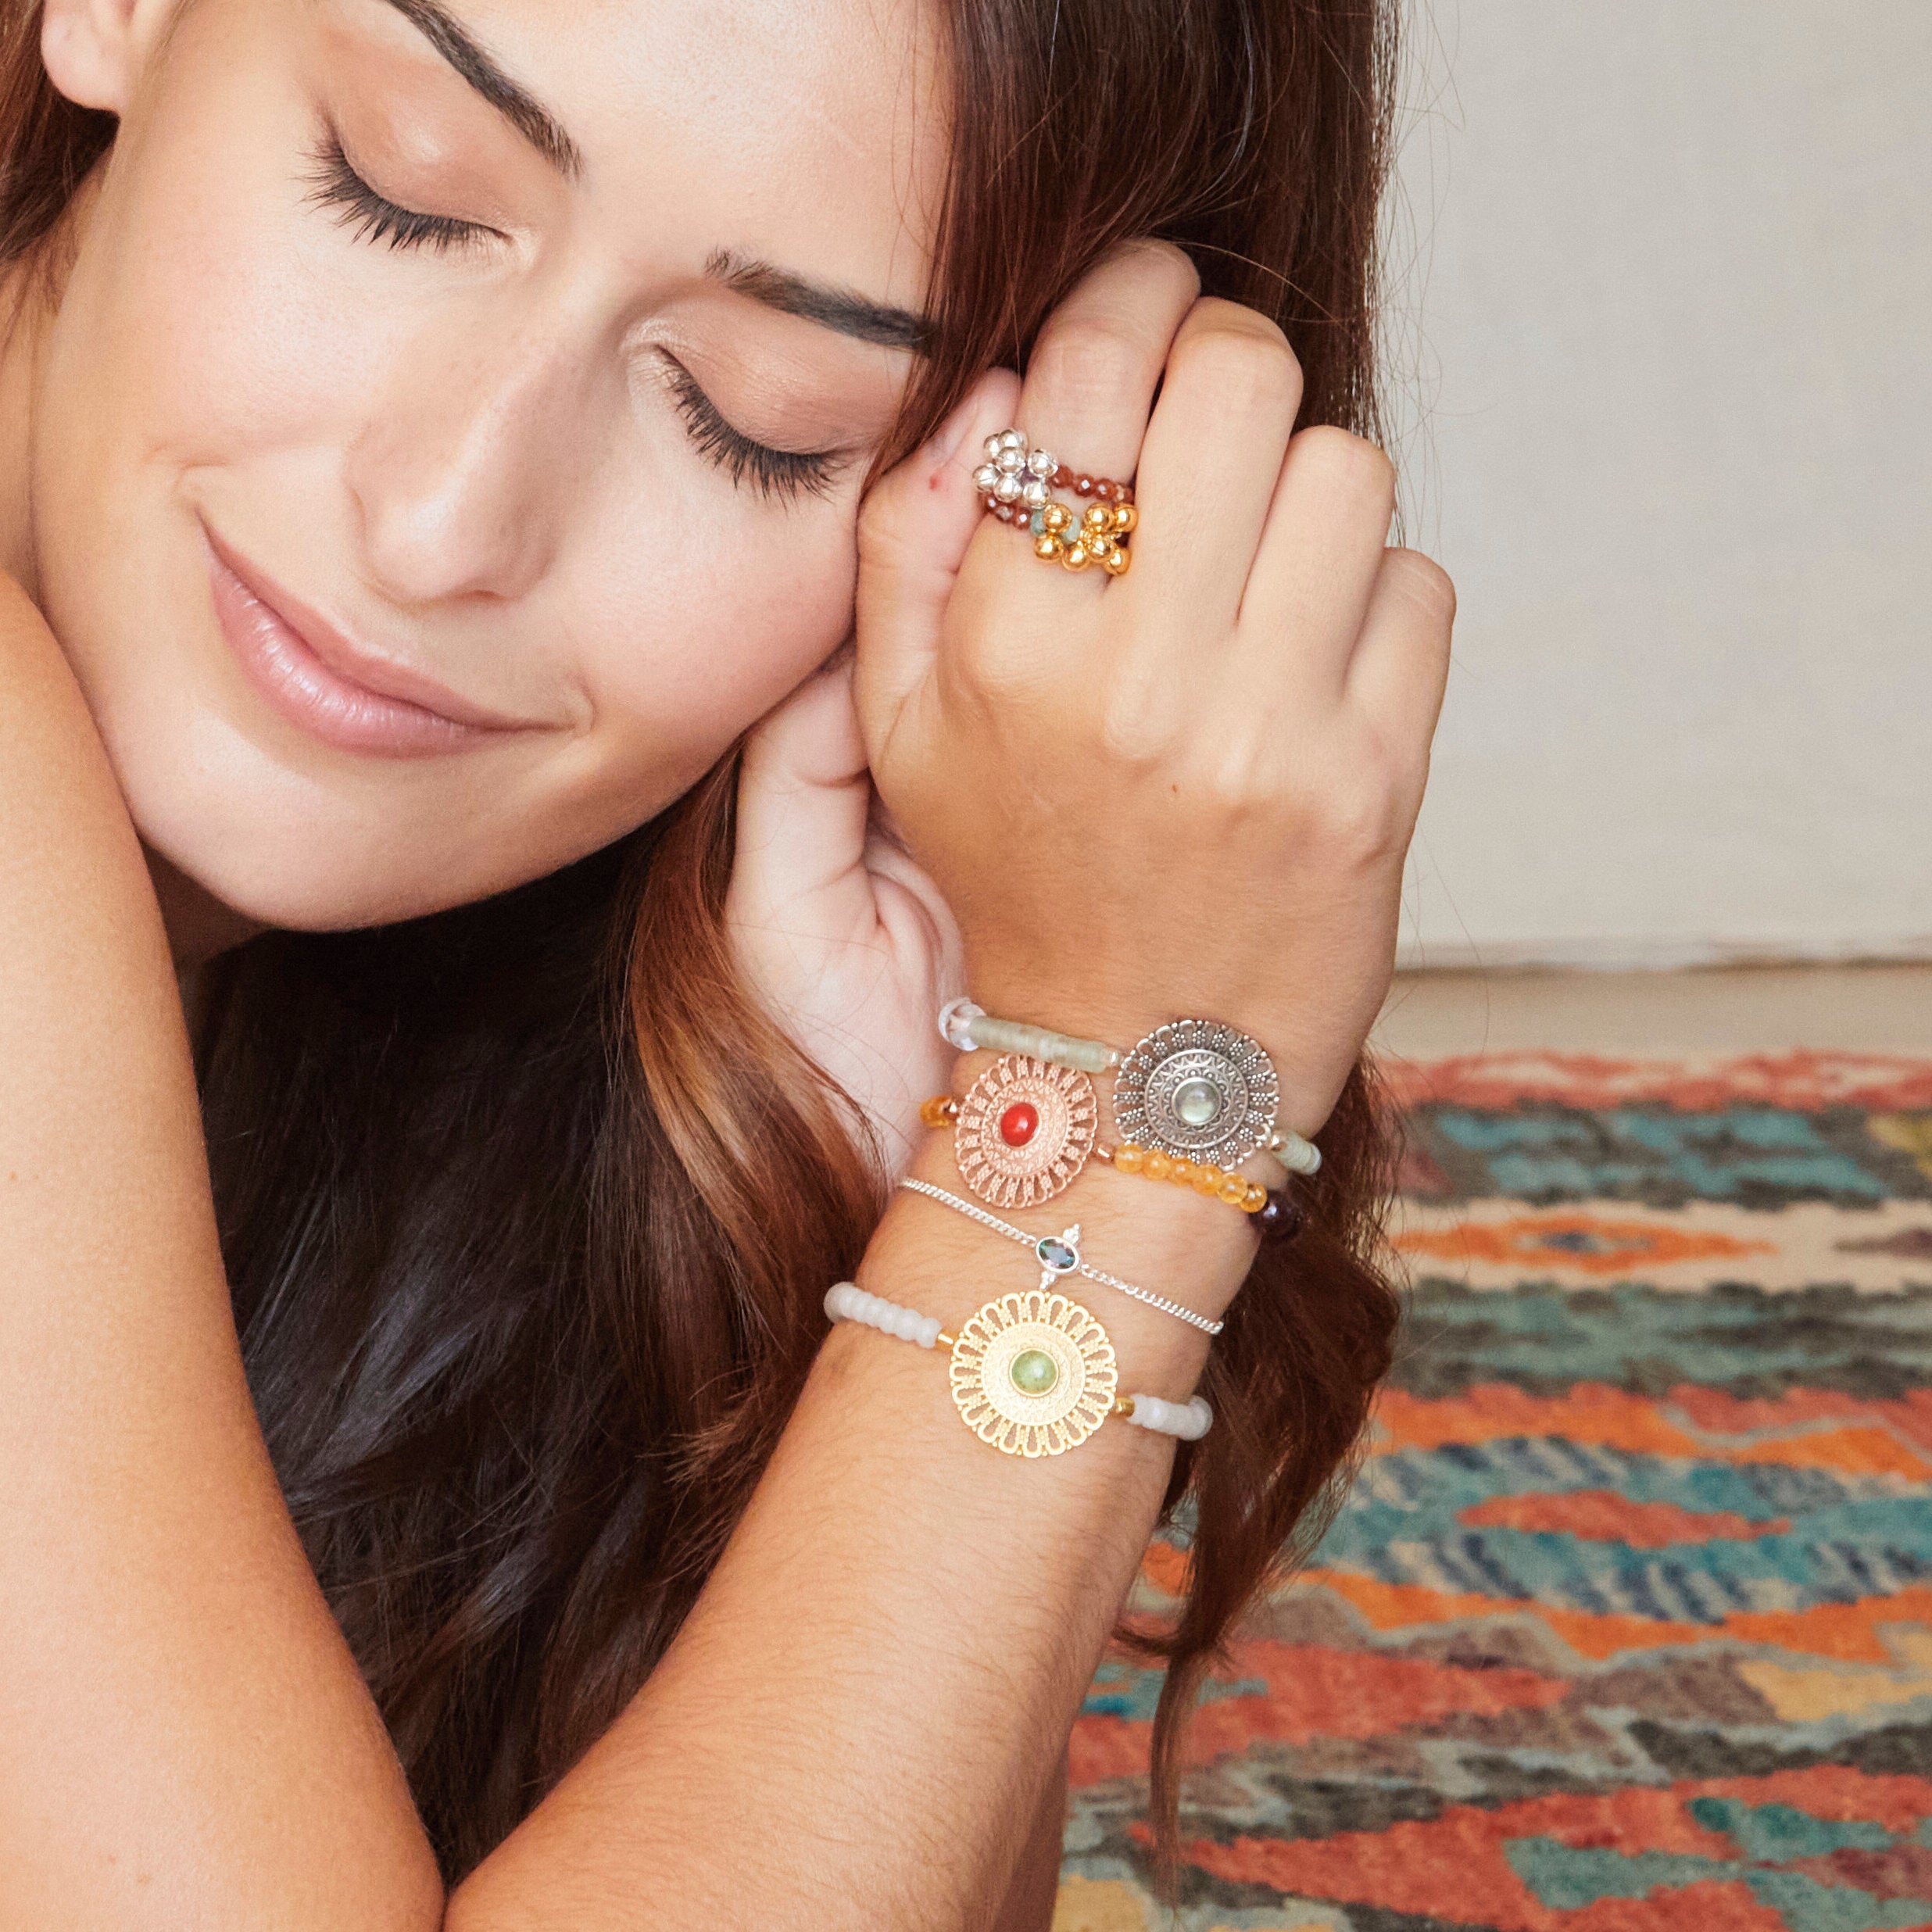 Mandala Armband aus heilenden Edelsteinen für Freundschaft.